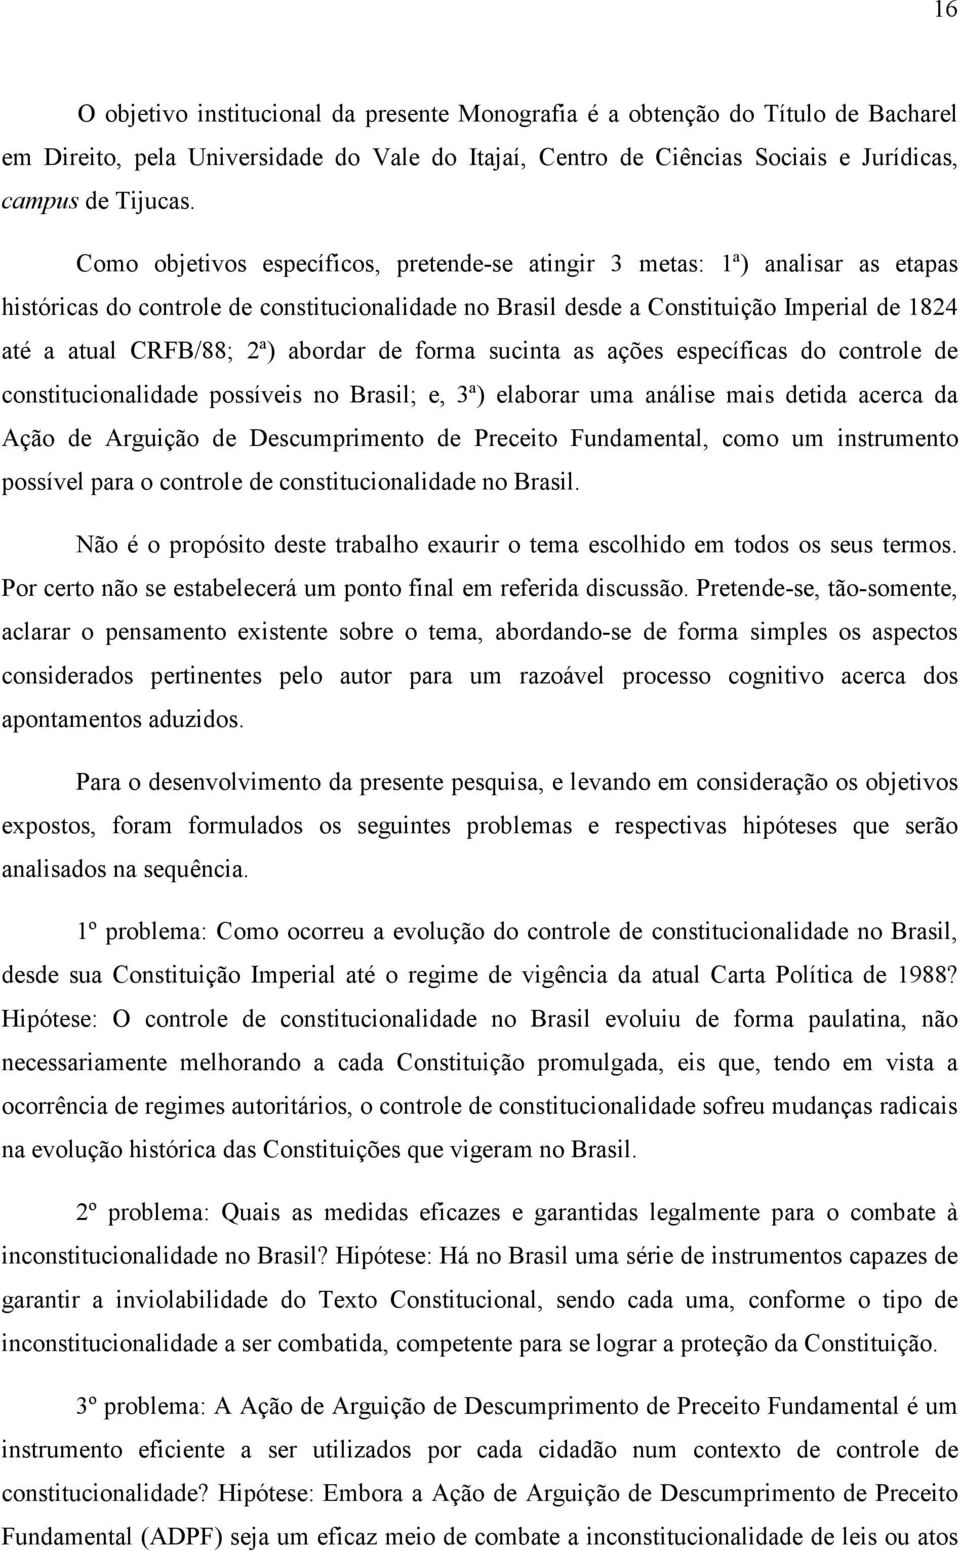 abordar de forma sucinta as ações específicas do controle de constitucionalidade possíveis no Brasil; e, 3ª) elaborar uma análise mais detida acerca da Ação de Arguição de Descumprimento de Preceito